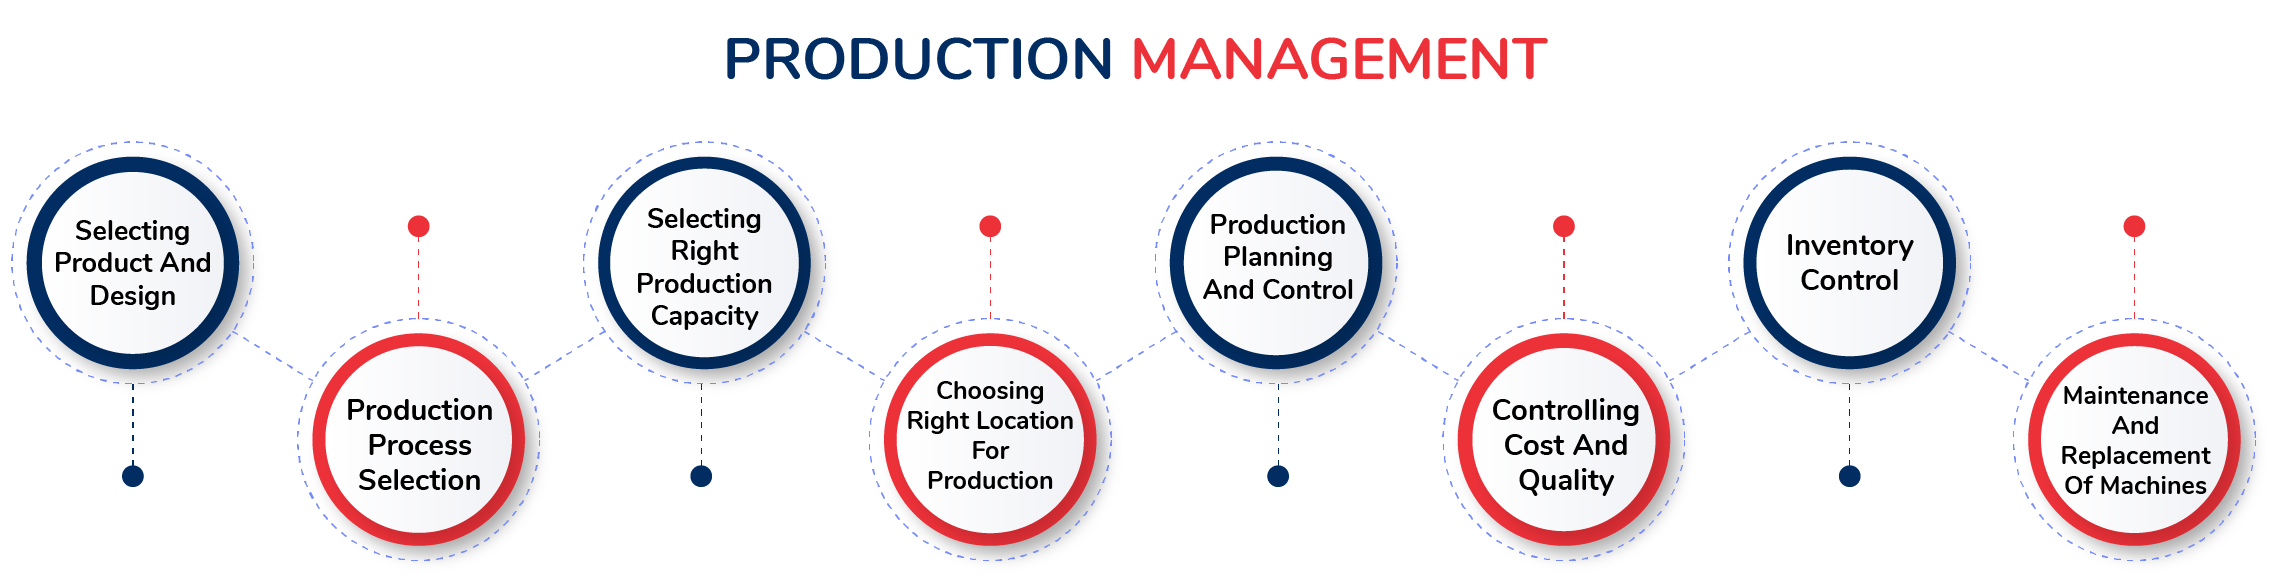 Production management